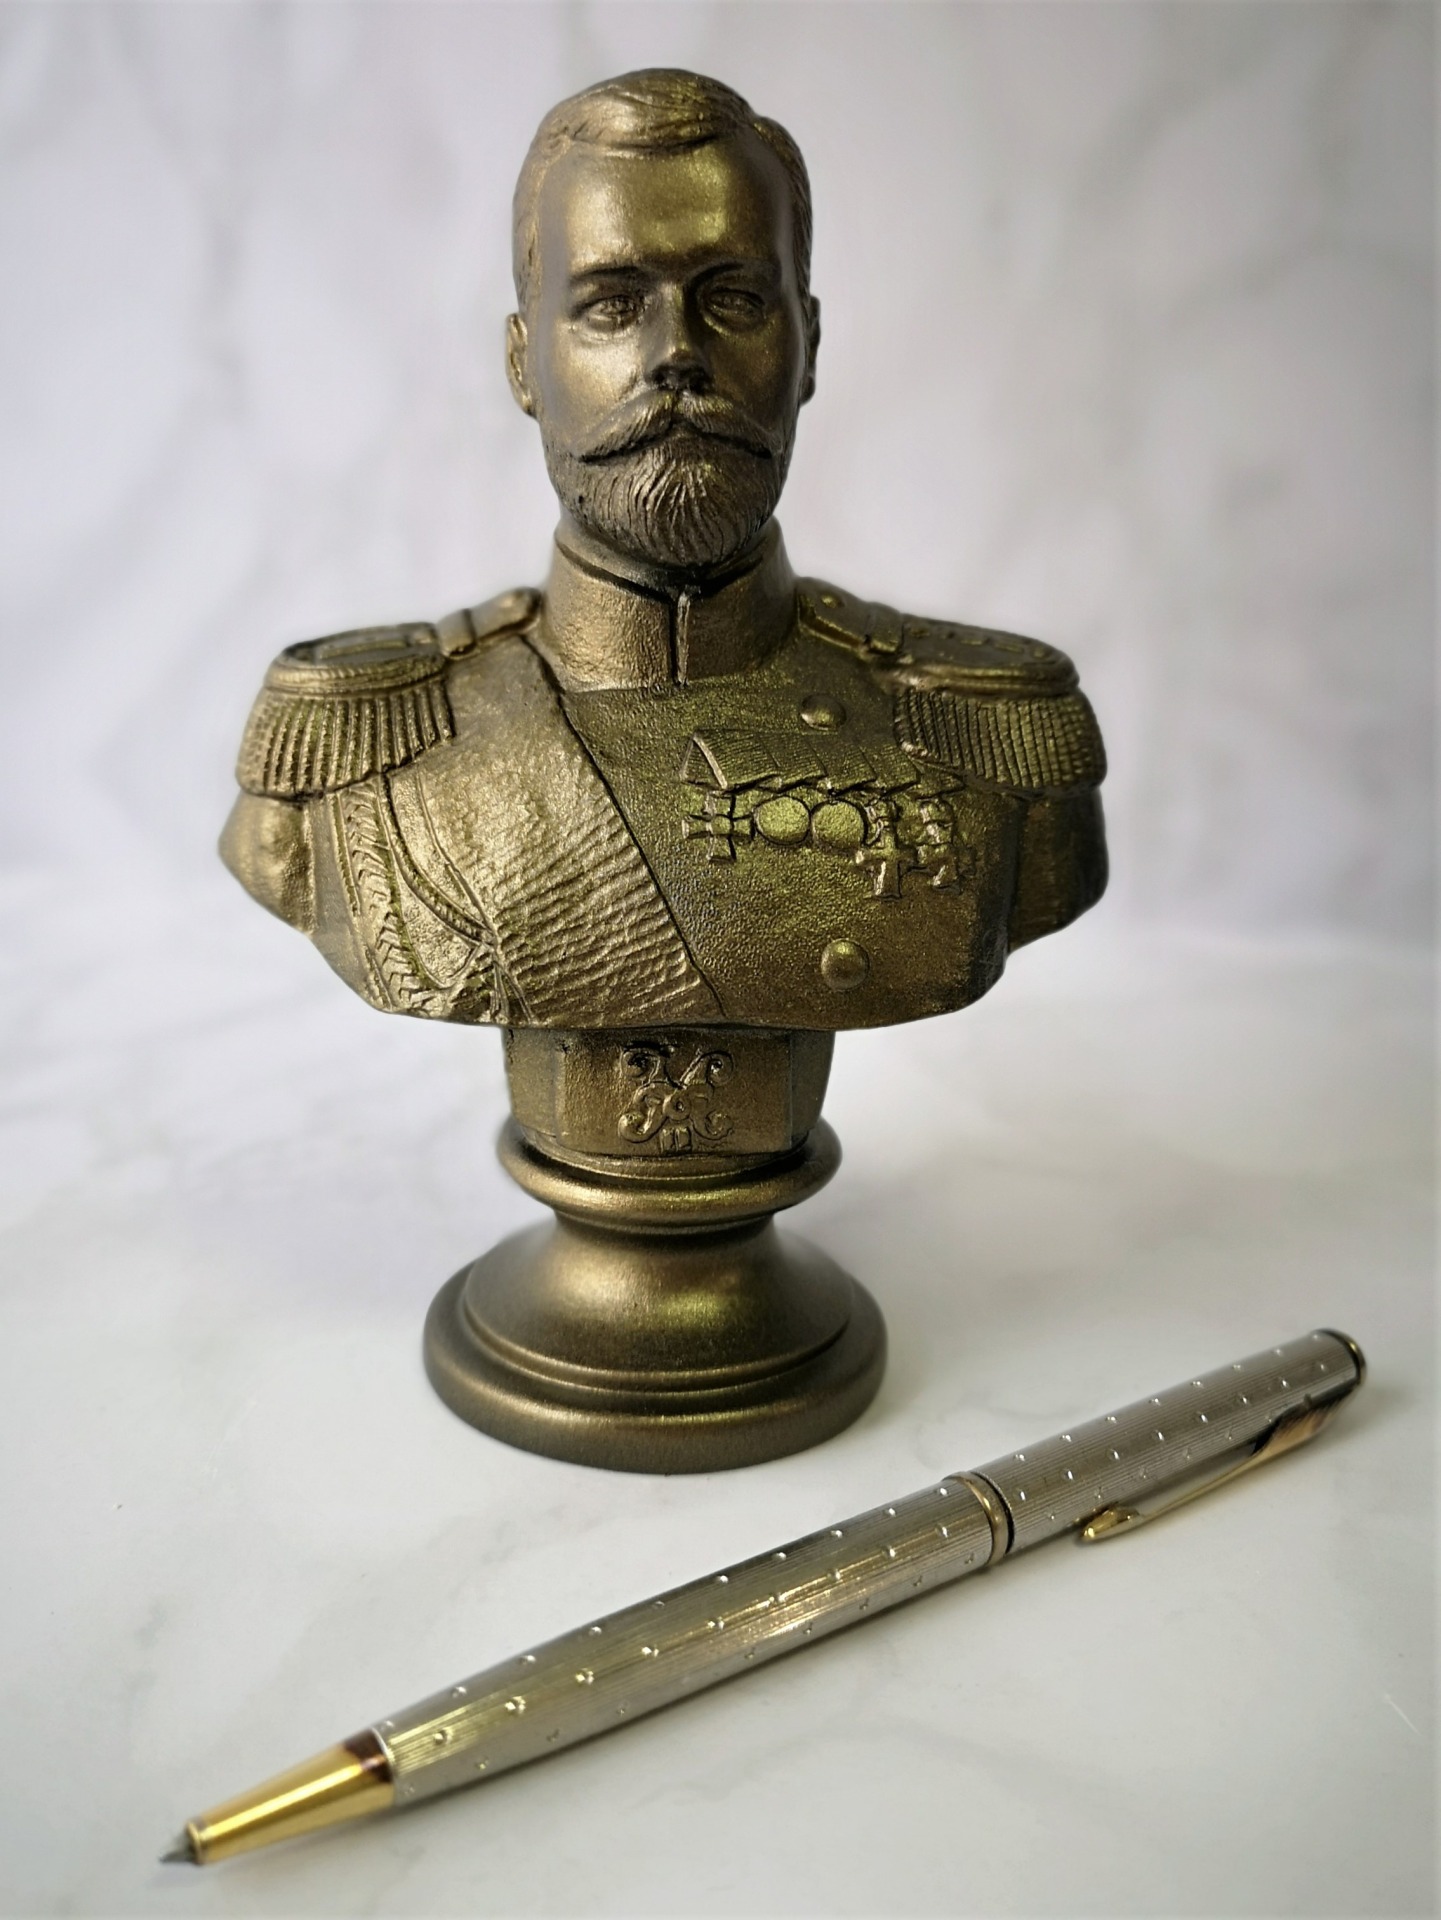 Николай II, 14 см. Цвет: бронза. Материал: мраморная крошка.